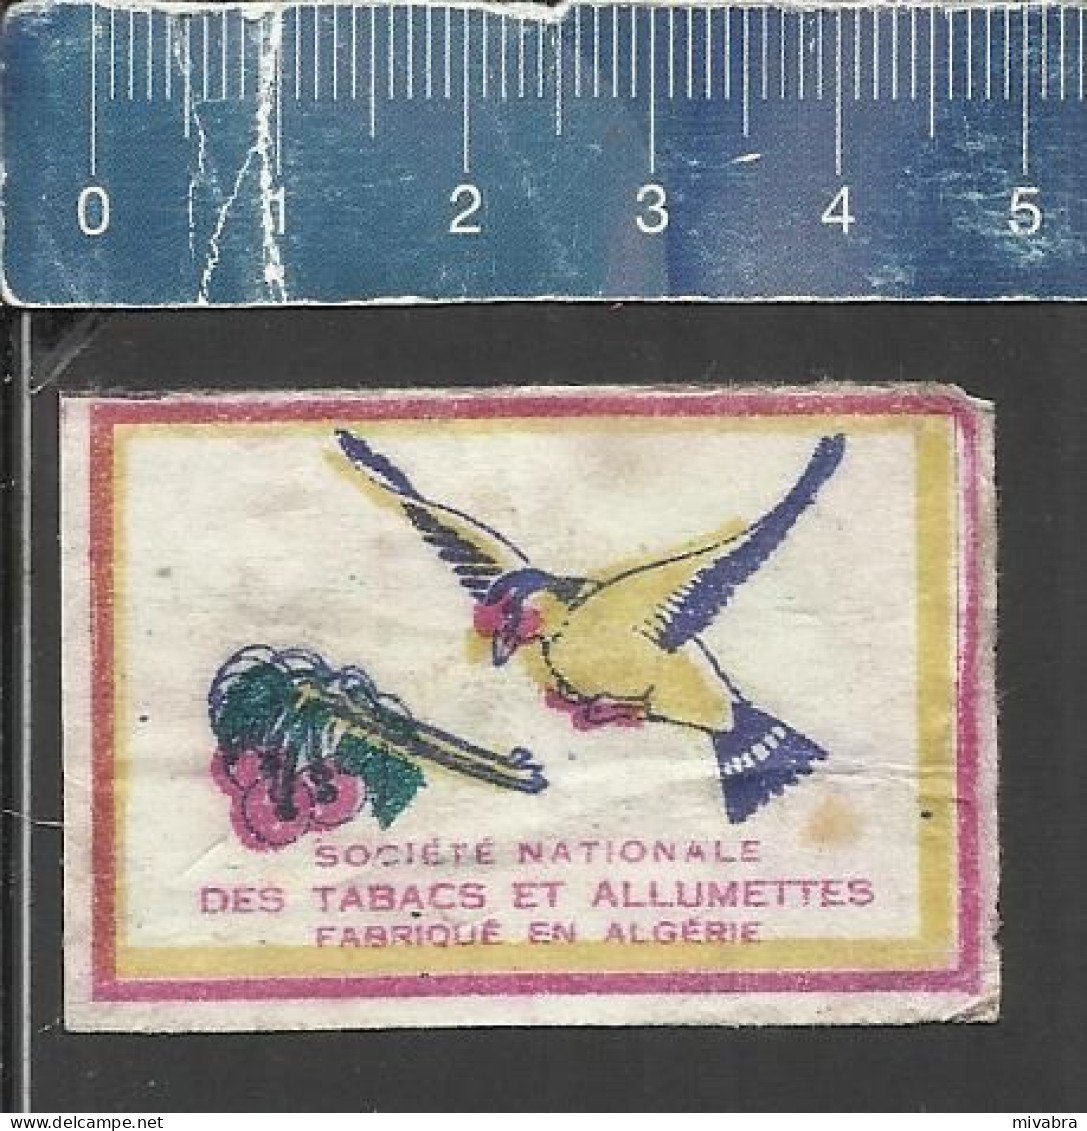 BIRD ( OISEAU VOGEL ) - OLD MATCHBOX LABEL ALGERIA - Boites D'allumettes - Etiquettes